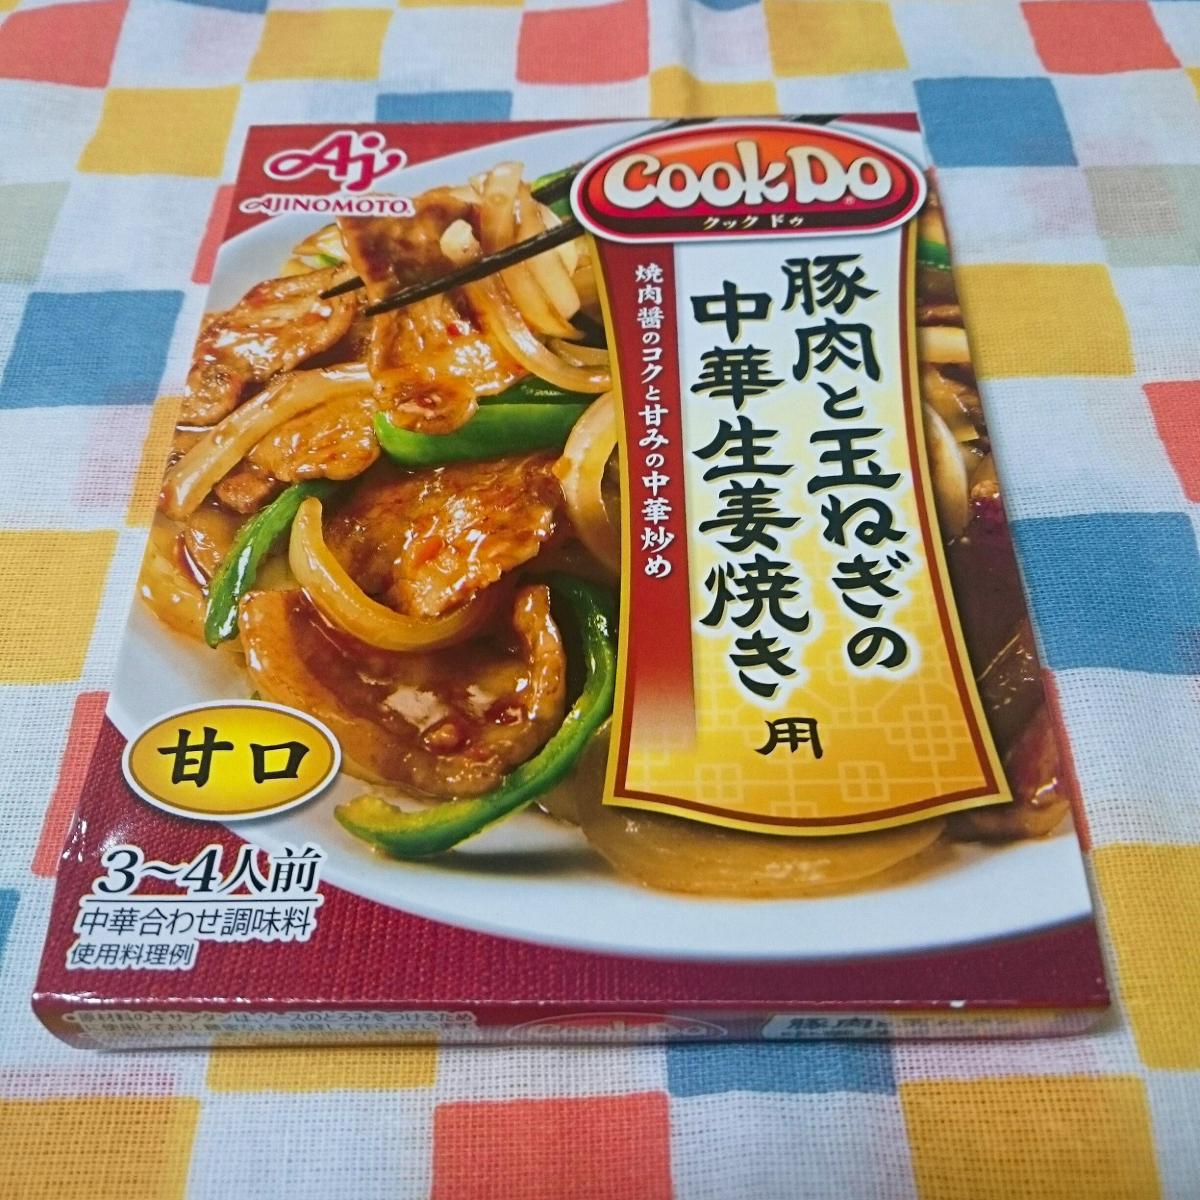 味の素 Cook Do® 豚肉と玉ねぎの中華生姜焼き用の商品ページ